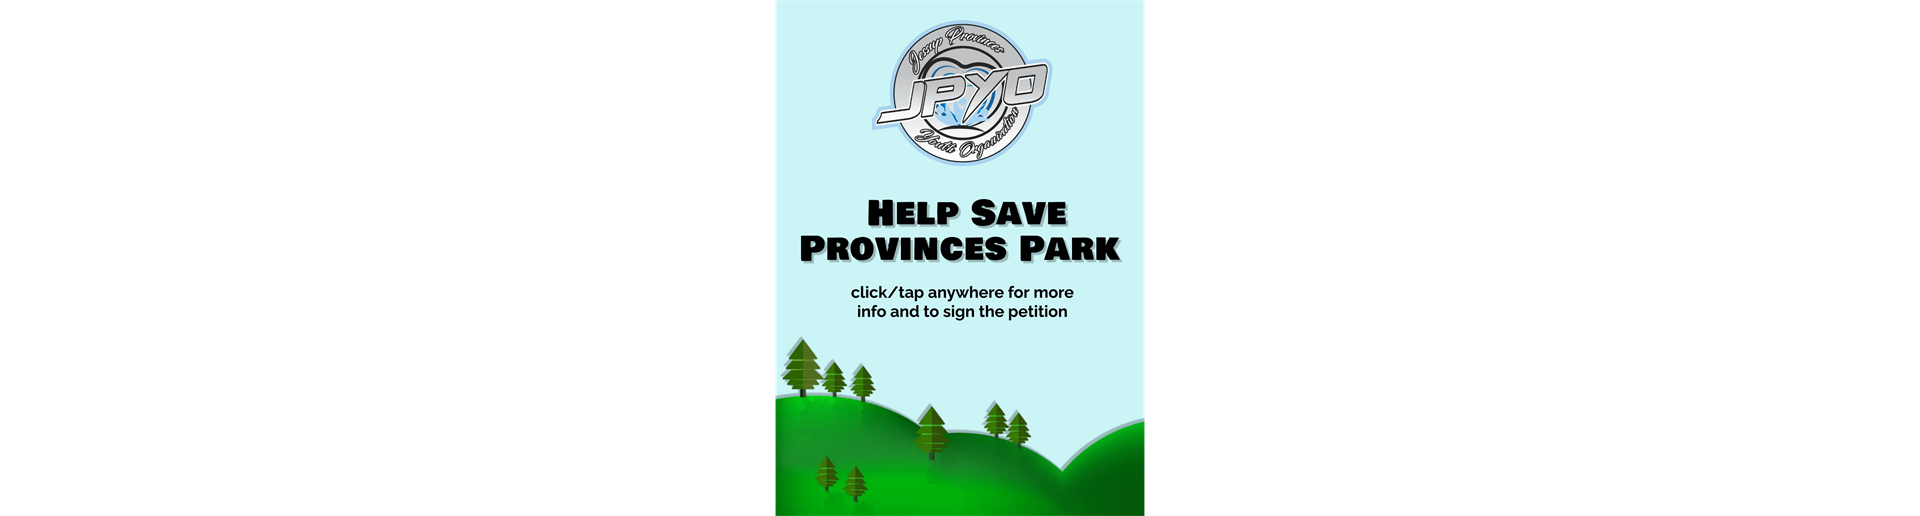 Save Provinces Park!